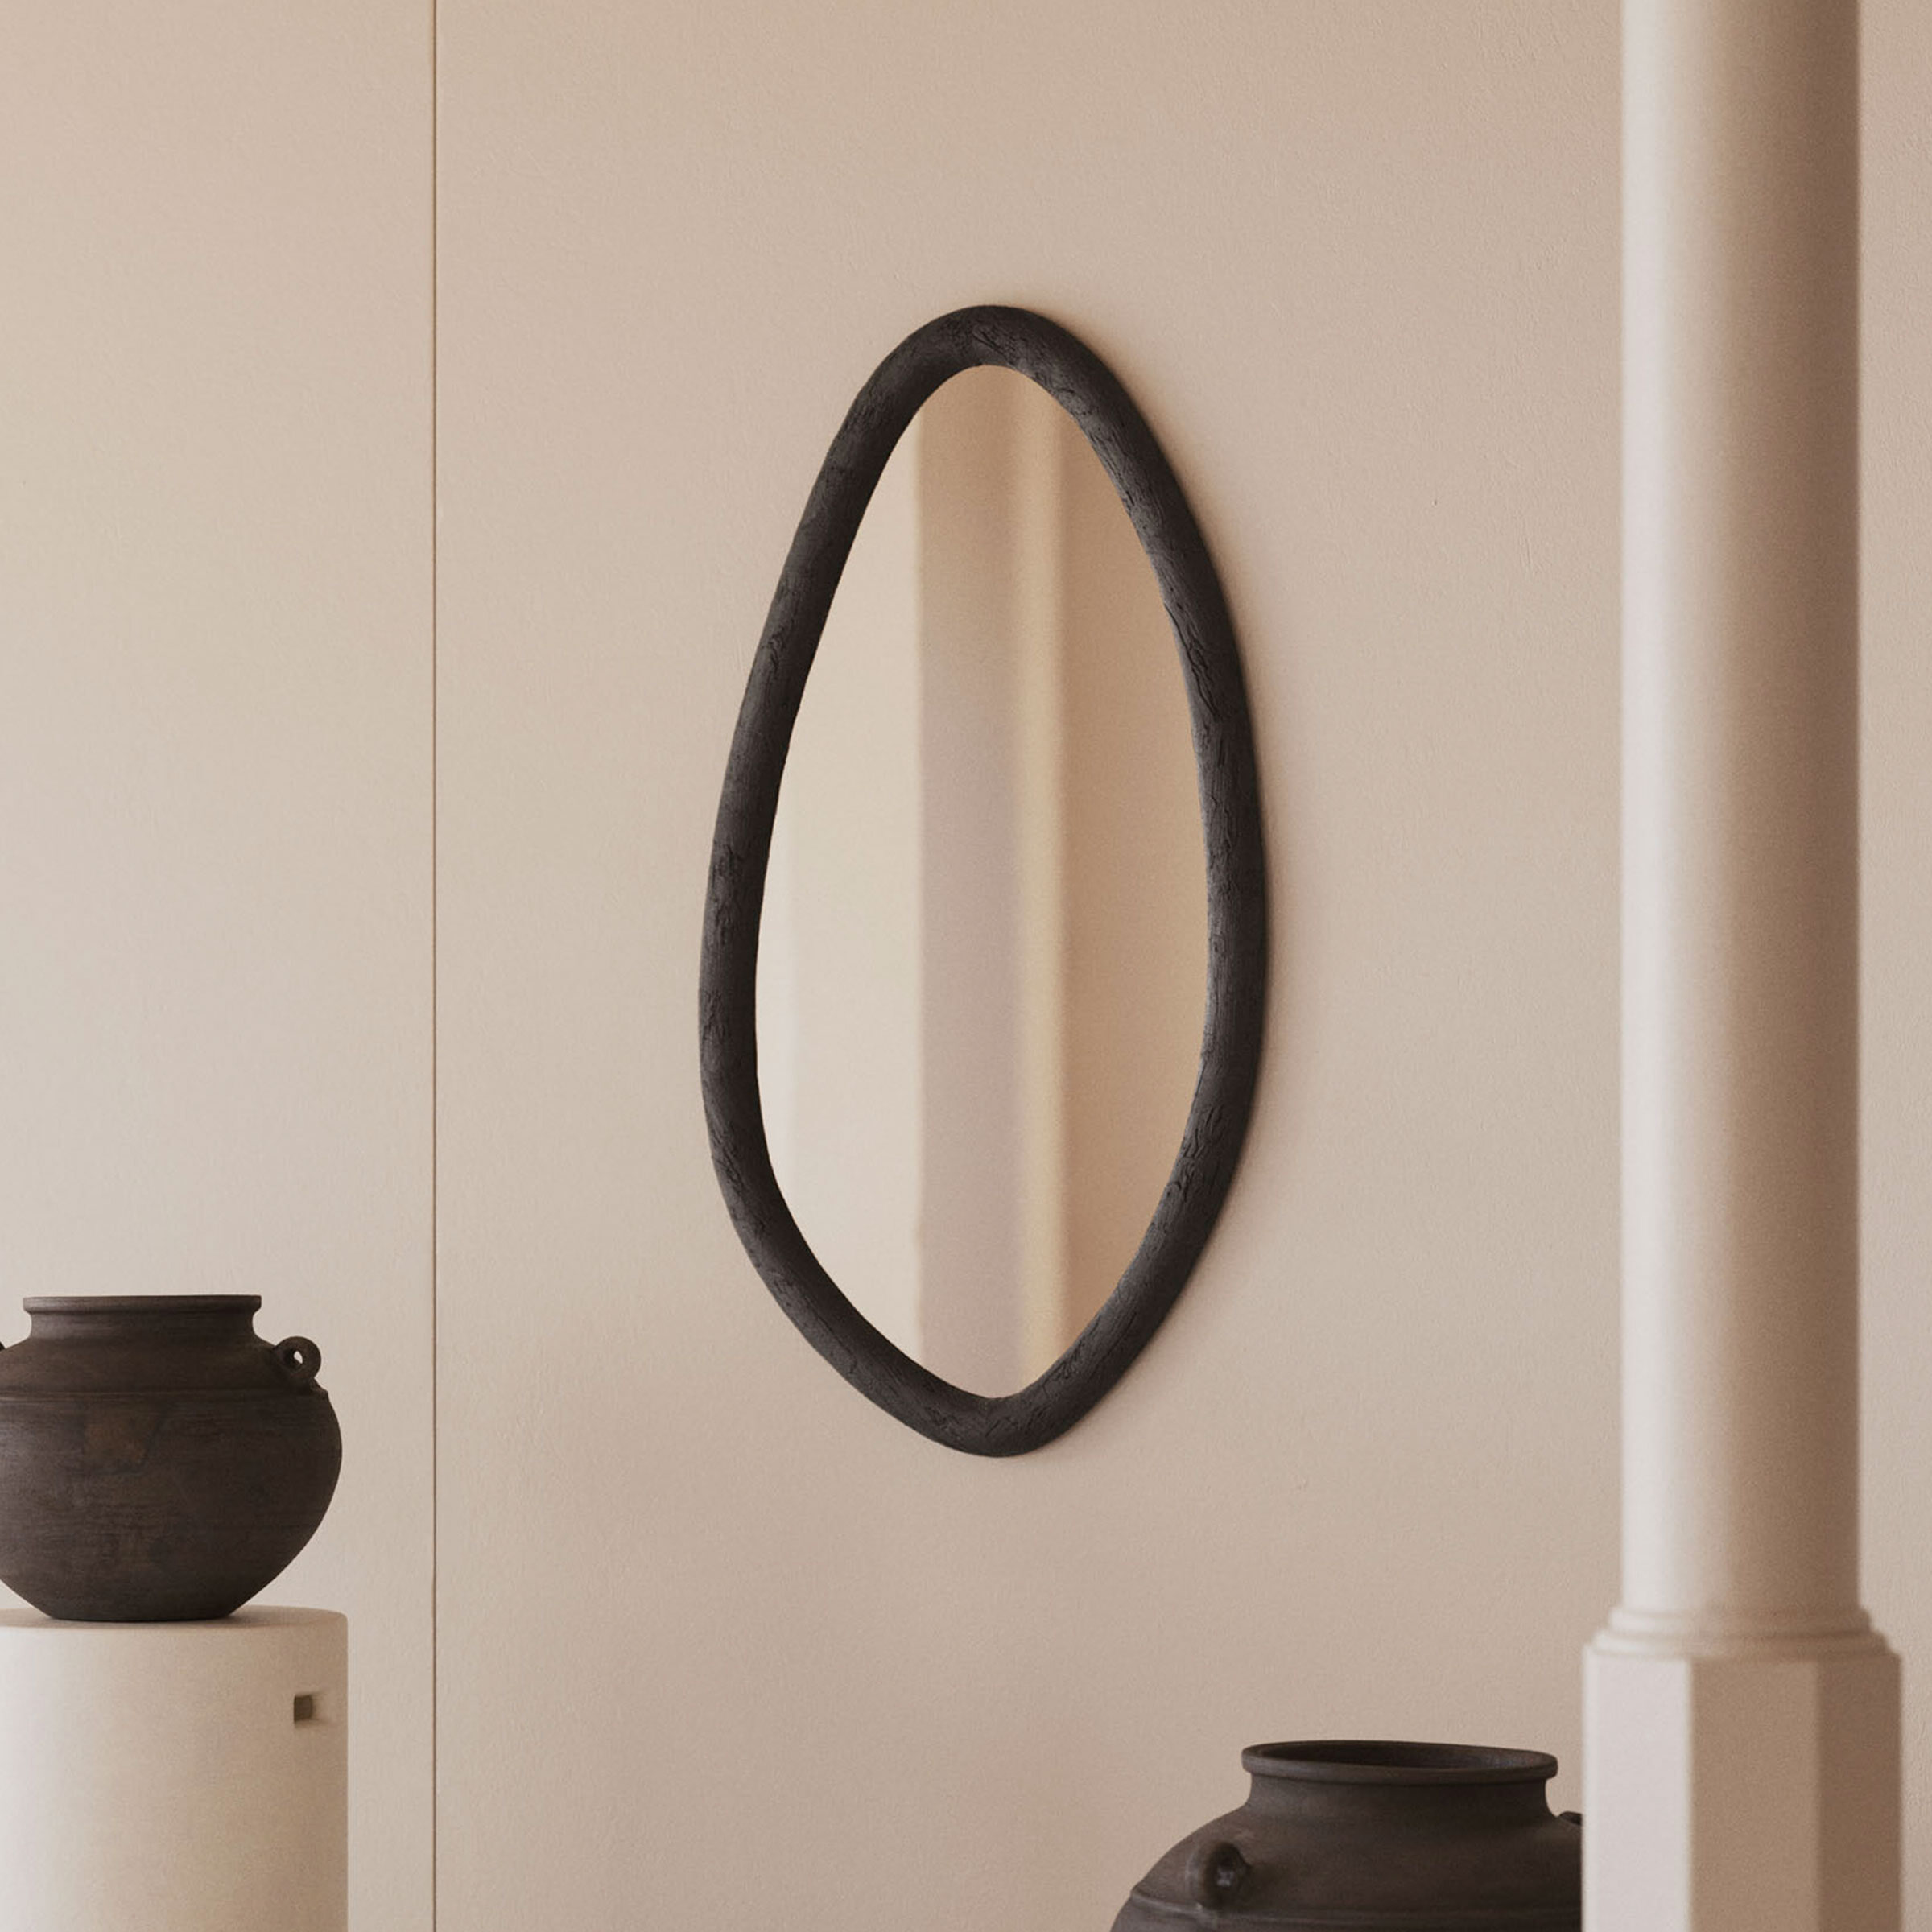 Kave Home Organische Spiegel Magrit Mungurhout, 110 x 60cm - Zwart